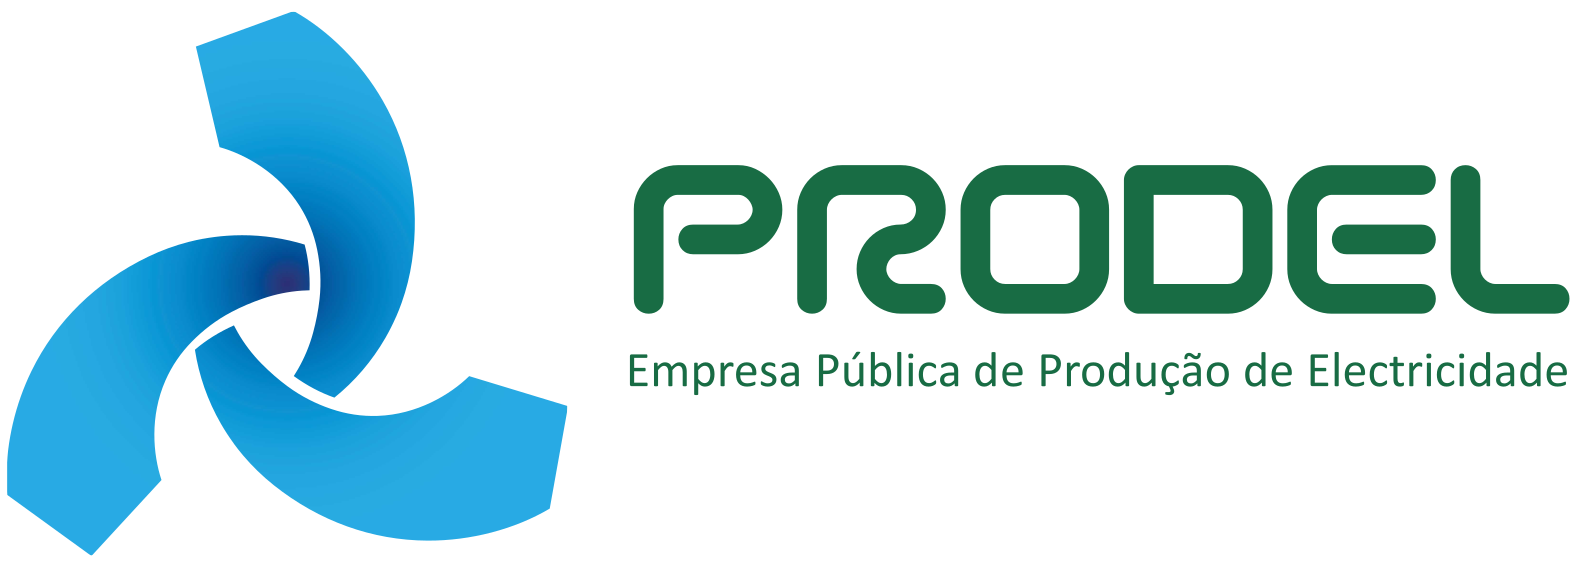 Logo Prodel